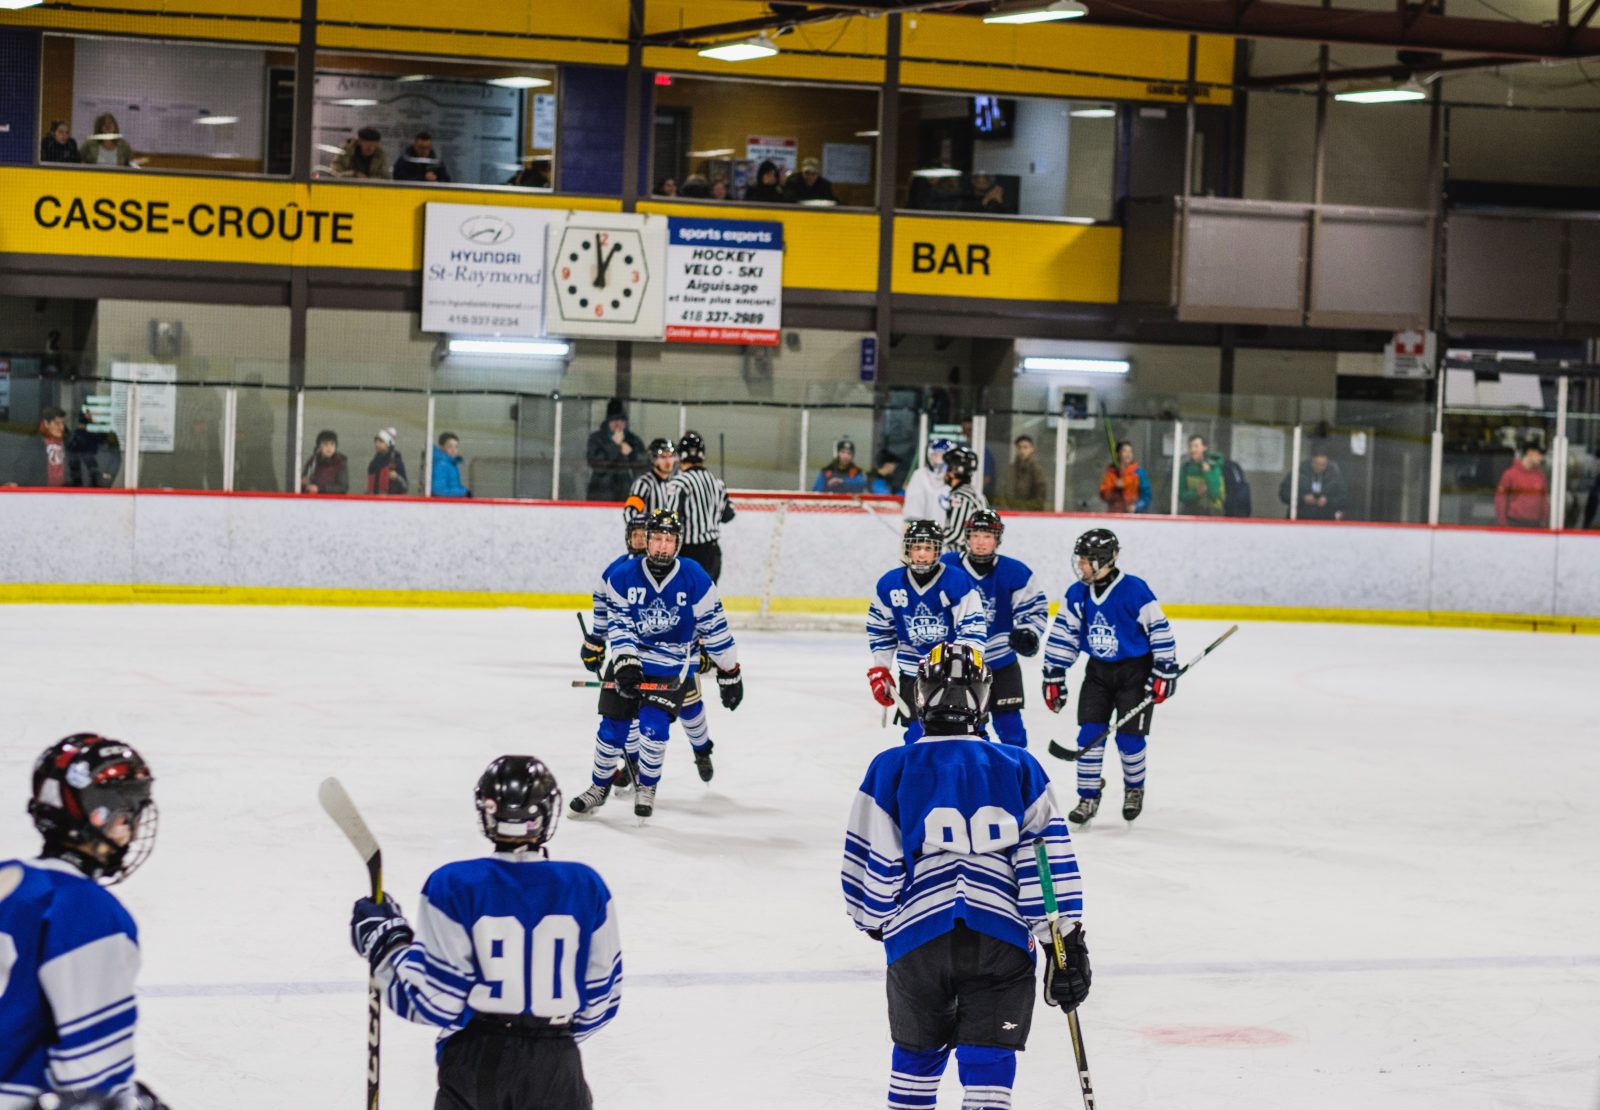 Plus de 500 joueurs participent au Tournoi provincial de hockey mineur de Saint-Raymond  